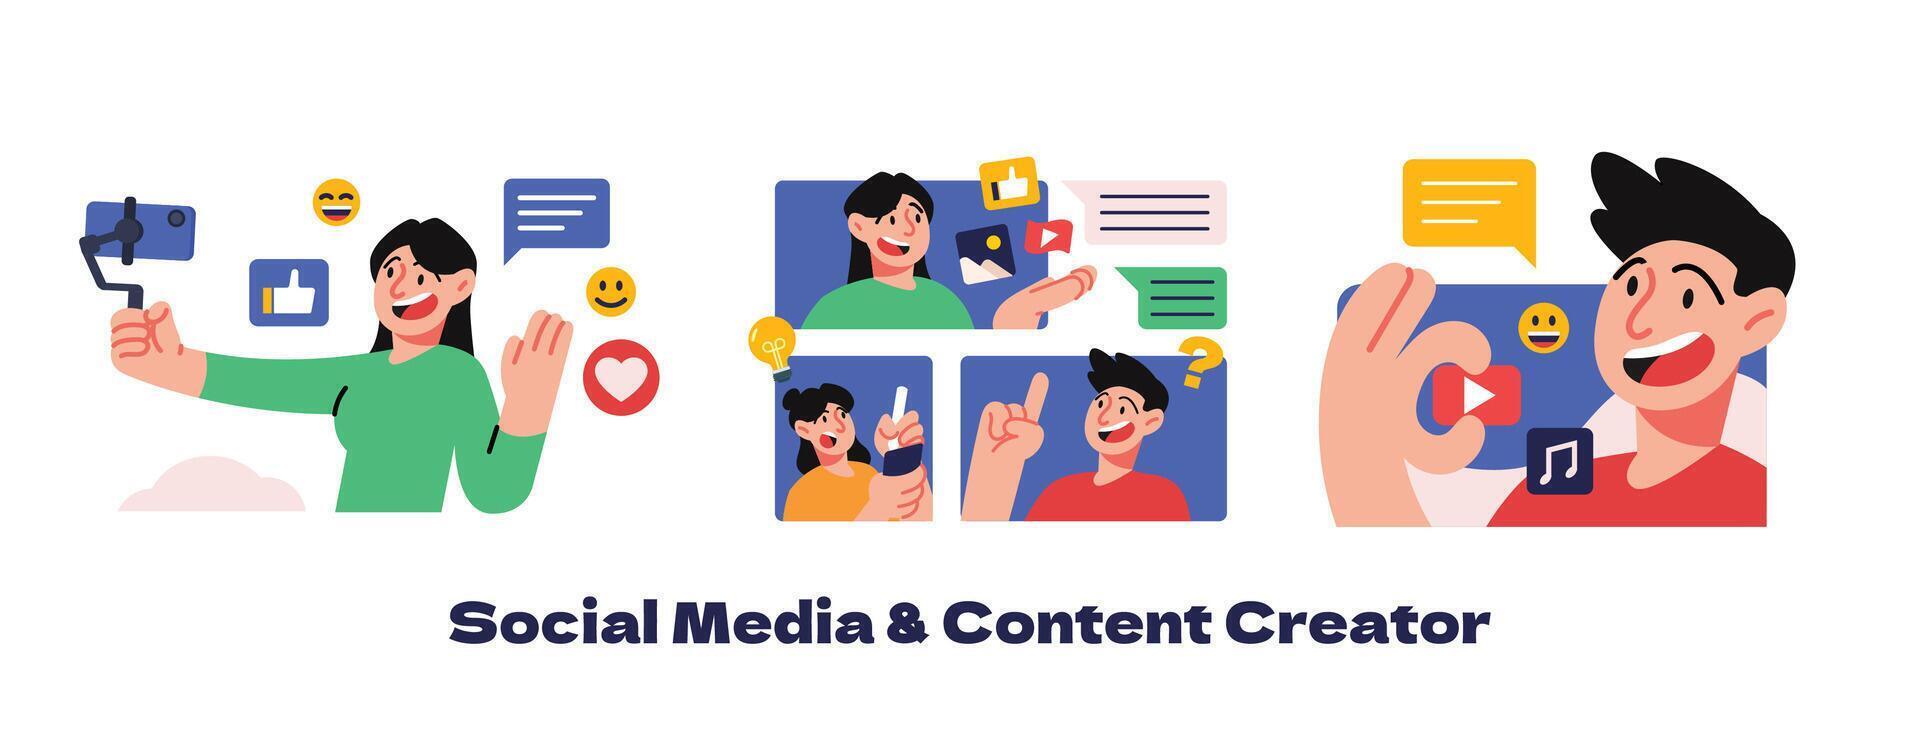 social medios de comunicación y contenido creador ilustración vector